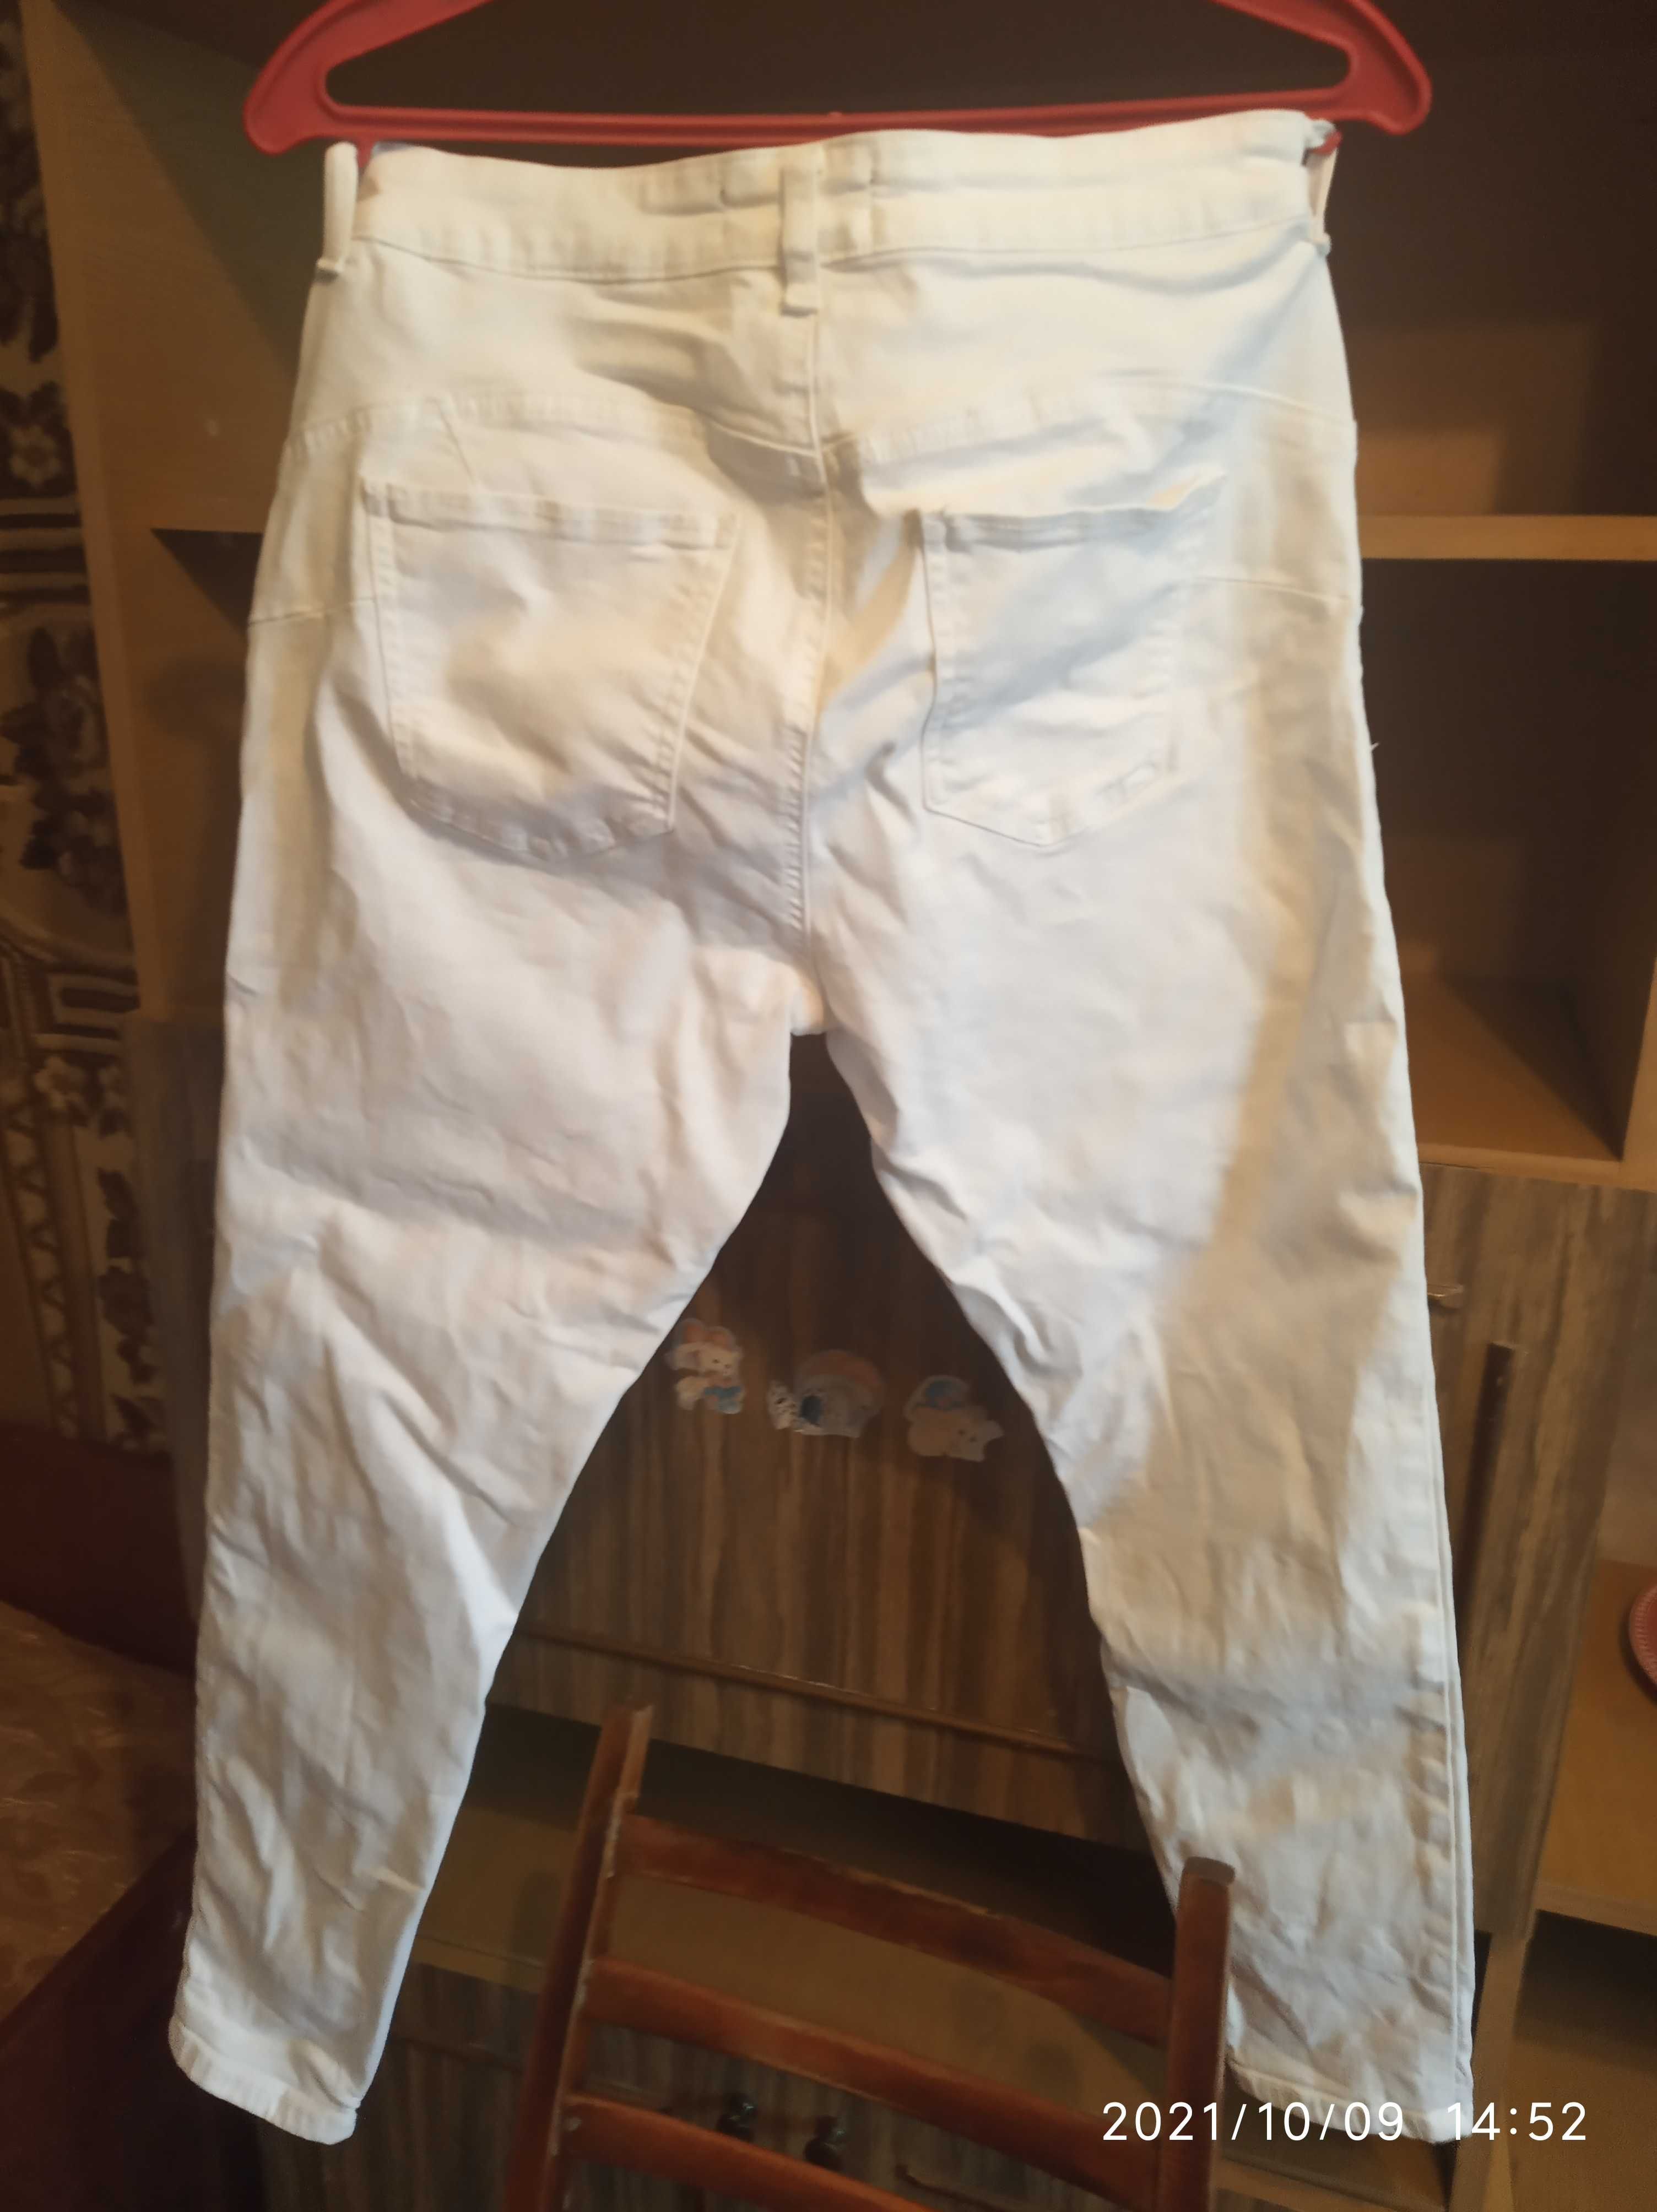 Продам брюки женские джинсовые белые х/б, размер европейский 42.